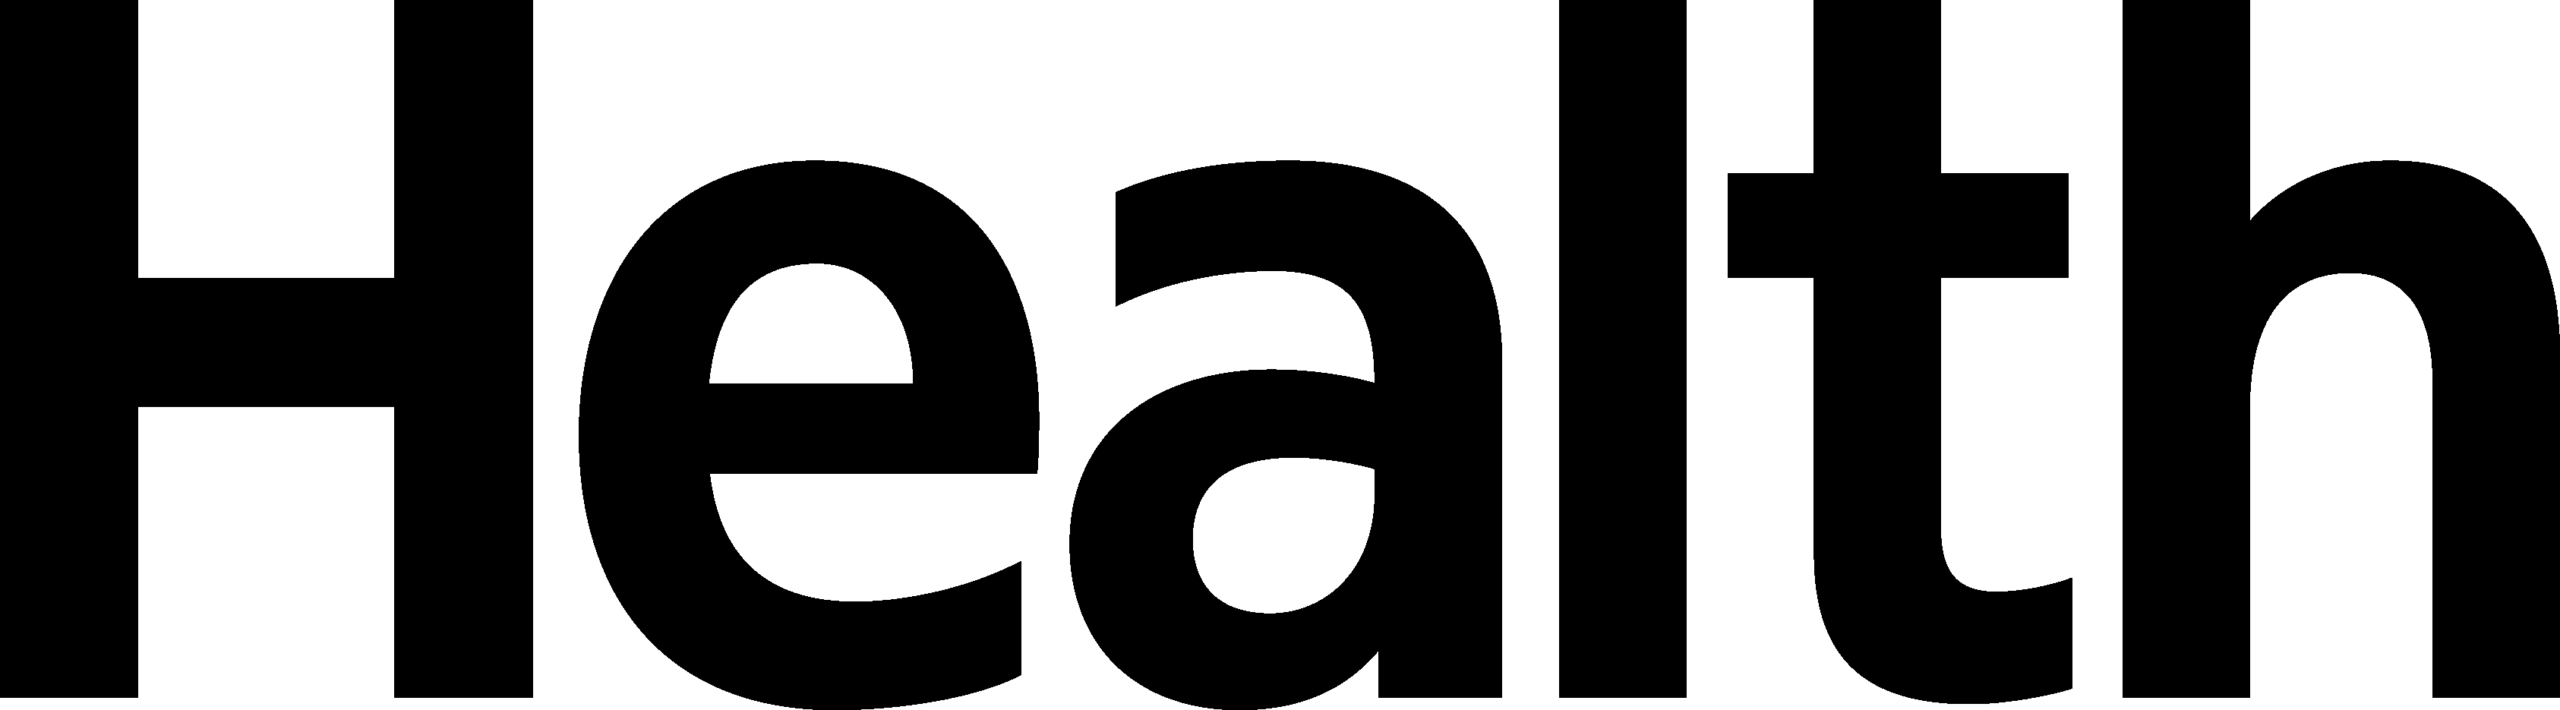 healt-logo